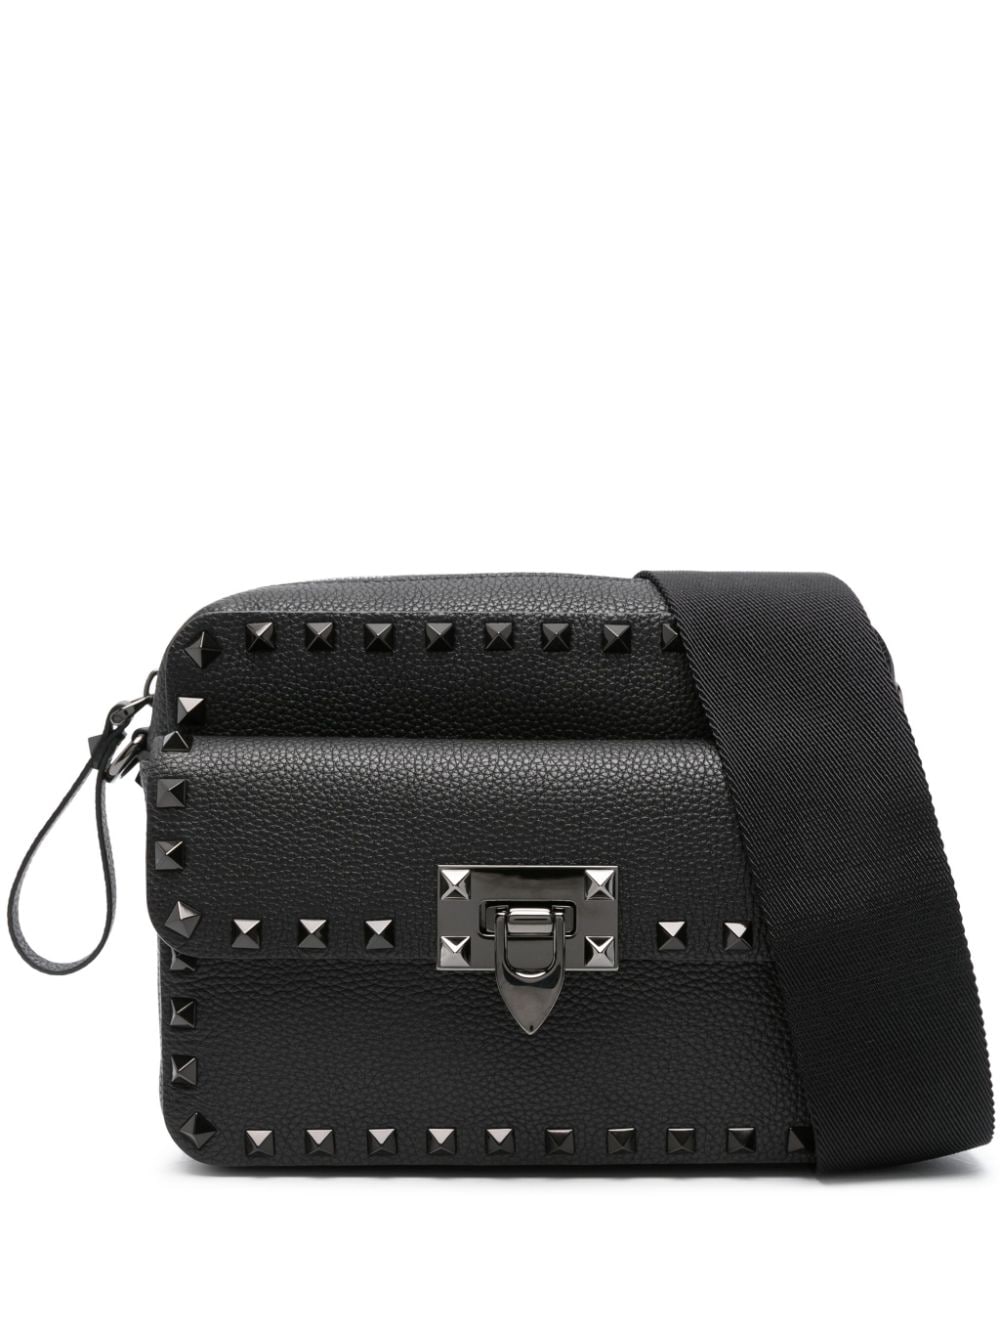 Rockstud-embellished messenger bag<BR/><BR/><BR/>